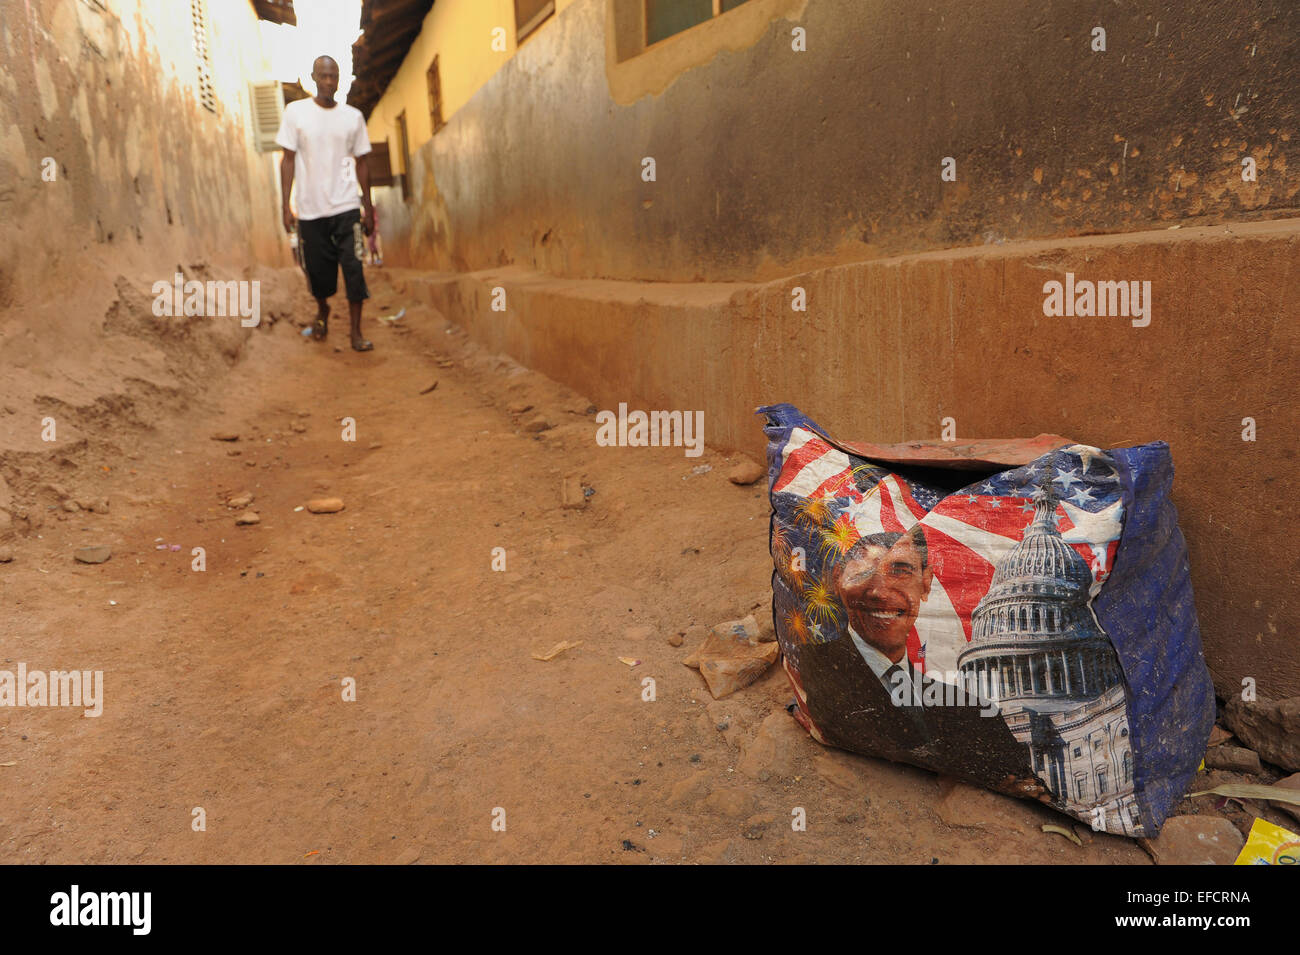 Eine Einkaufstasche mit dem Konterfei des US-Präsidenten Barak Obama liegt in einer Gasse in Accra, Ghana, Westafrika. Stockfoto